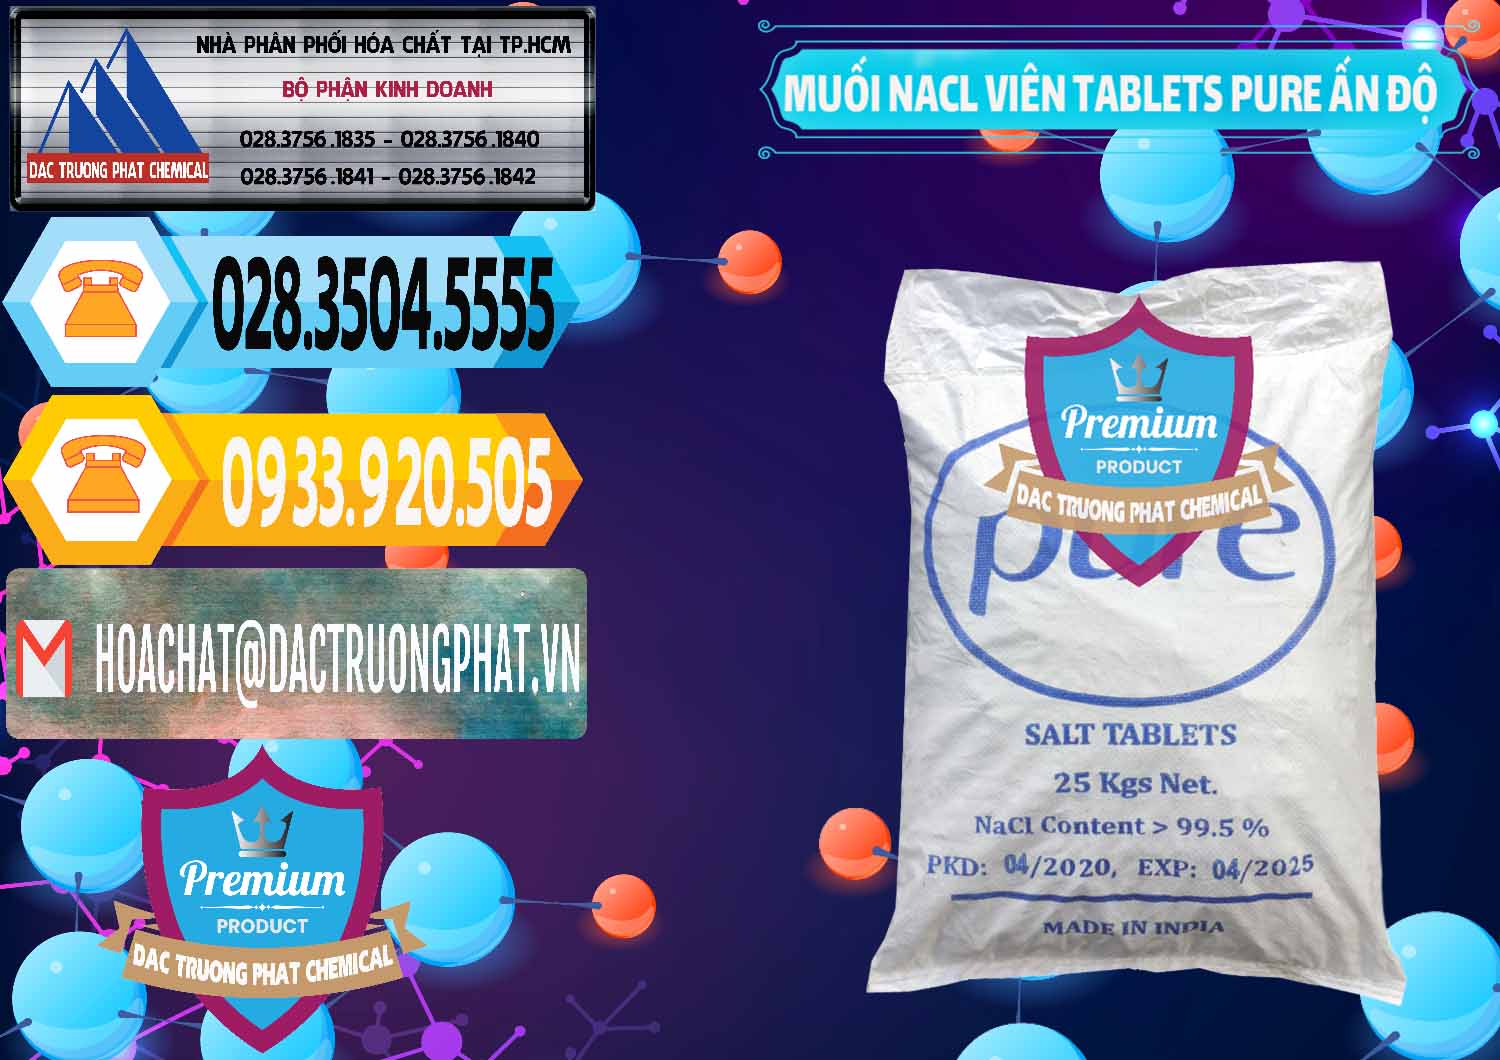 Công ty chuyên bán & cung cấp Muối NaCL – Sodium Chloride Dạng Viên Tablets Pure Ấn Độ India - 0294 - Công ty chuyên cung ứng _ phân phối hóa chất tại TP.HCM - hoachattayrua.net